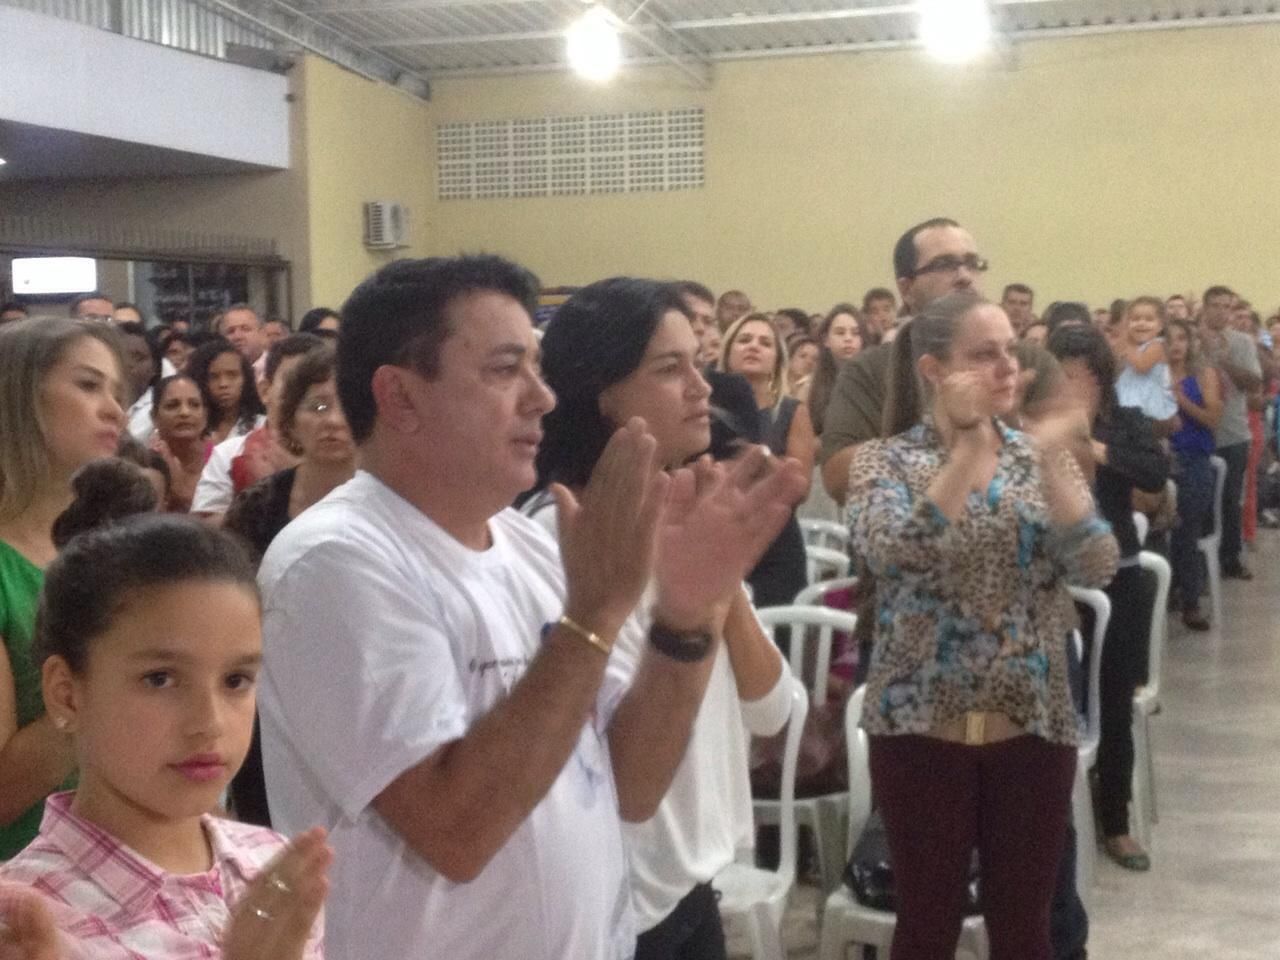 AO VIVO - Missa de 1 (um) ano de falecimento de Cristiano Araújo e Allana  Moraes